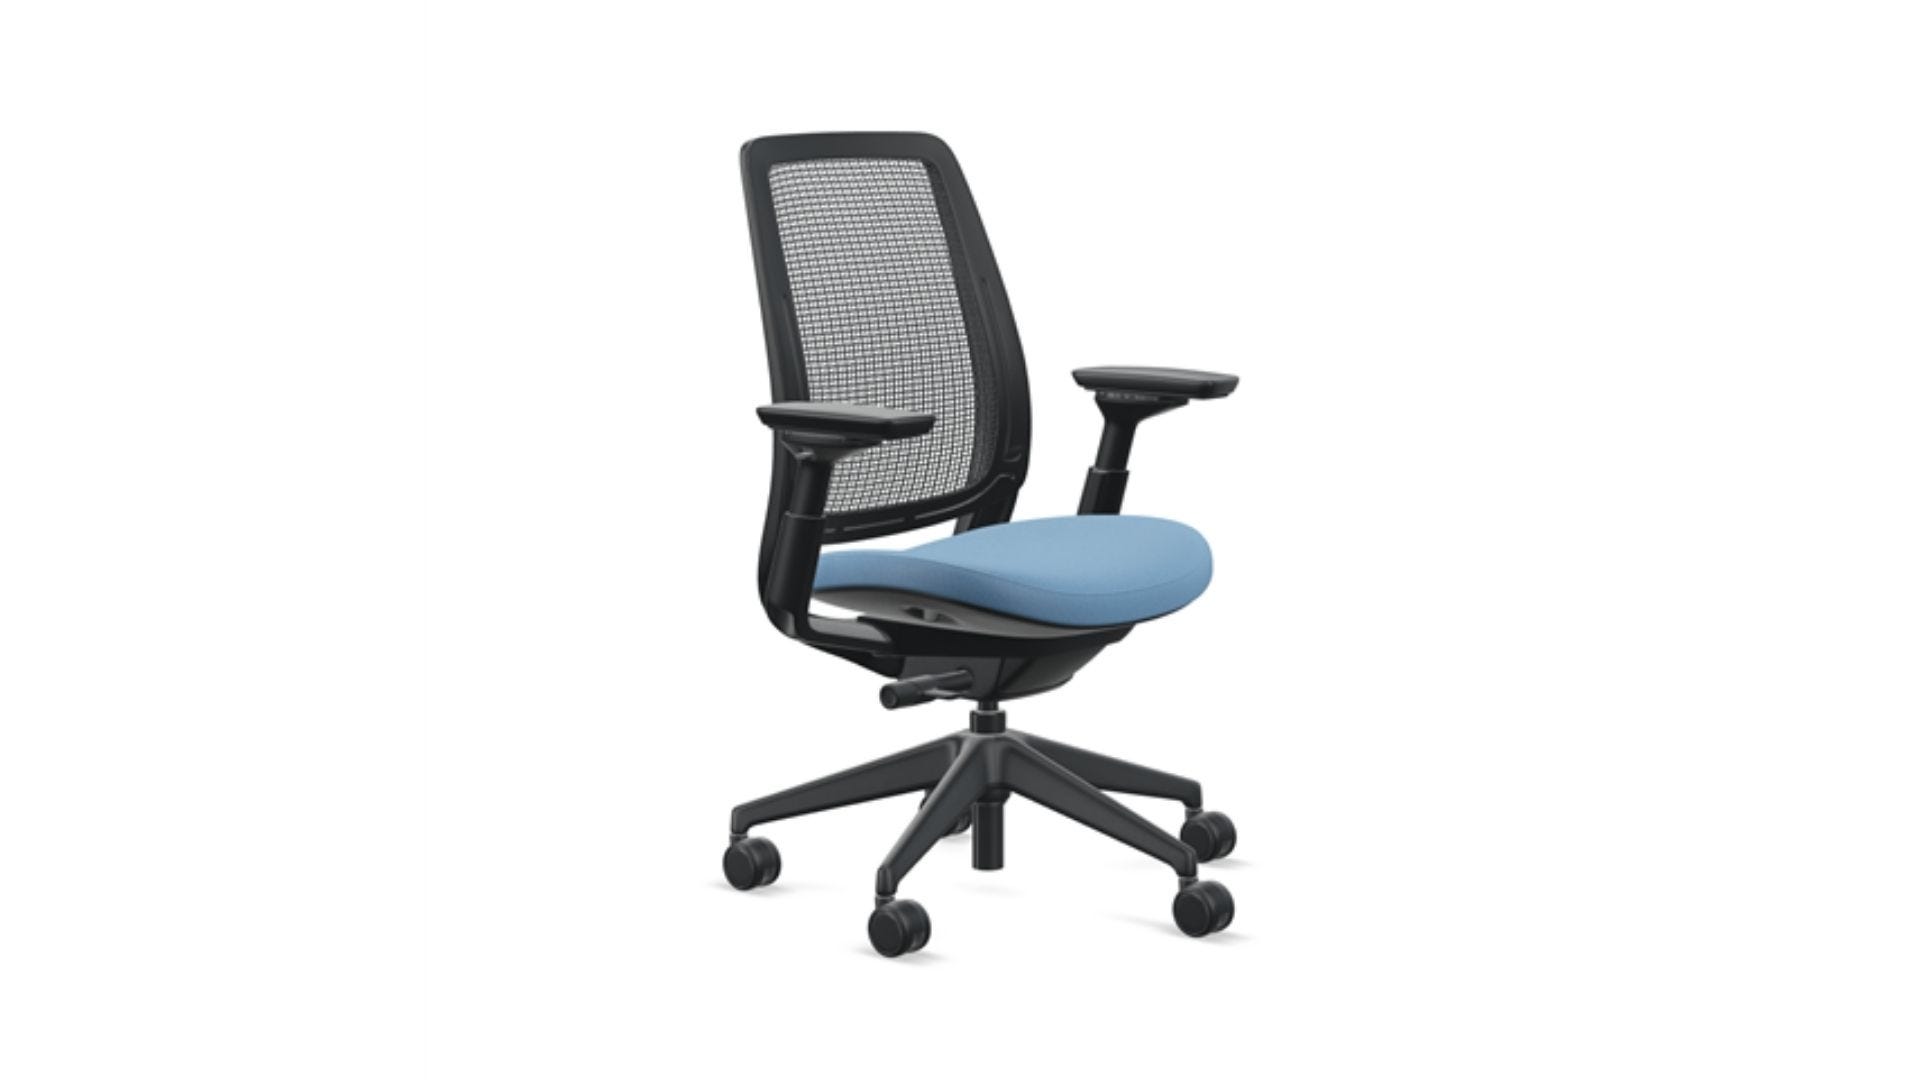 Le fauteuil ergonomique Steelcase Series 2 avec revêtement bleu est légèrement incliné vers la droite.